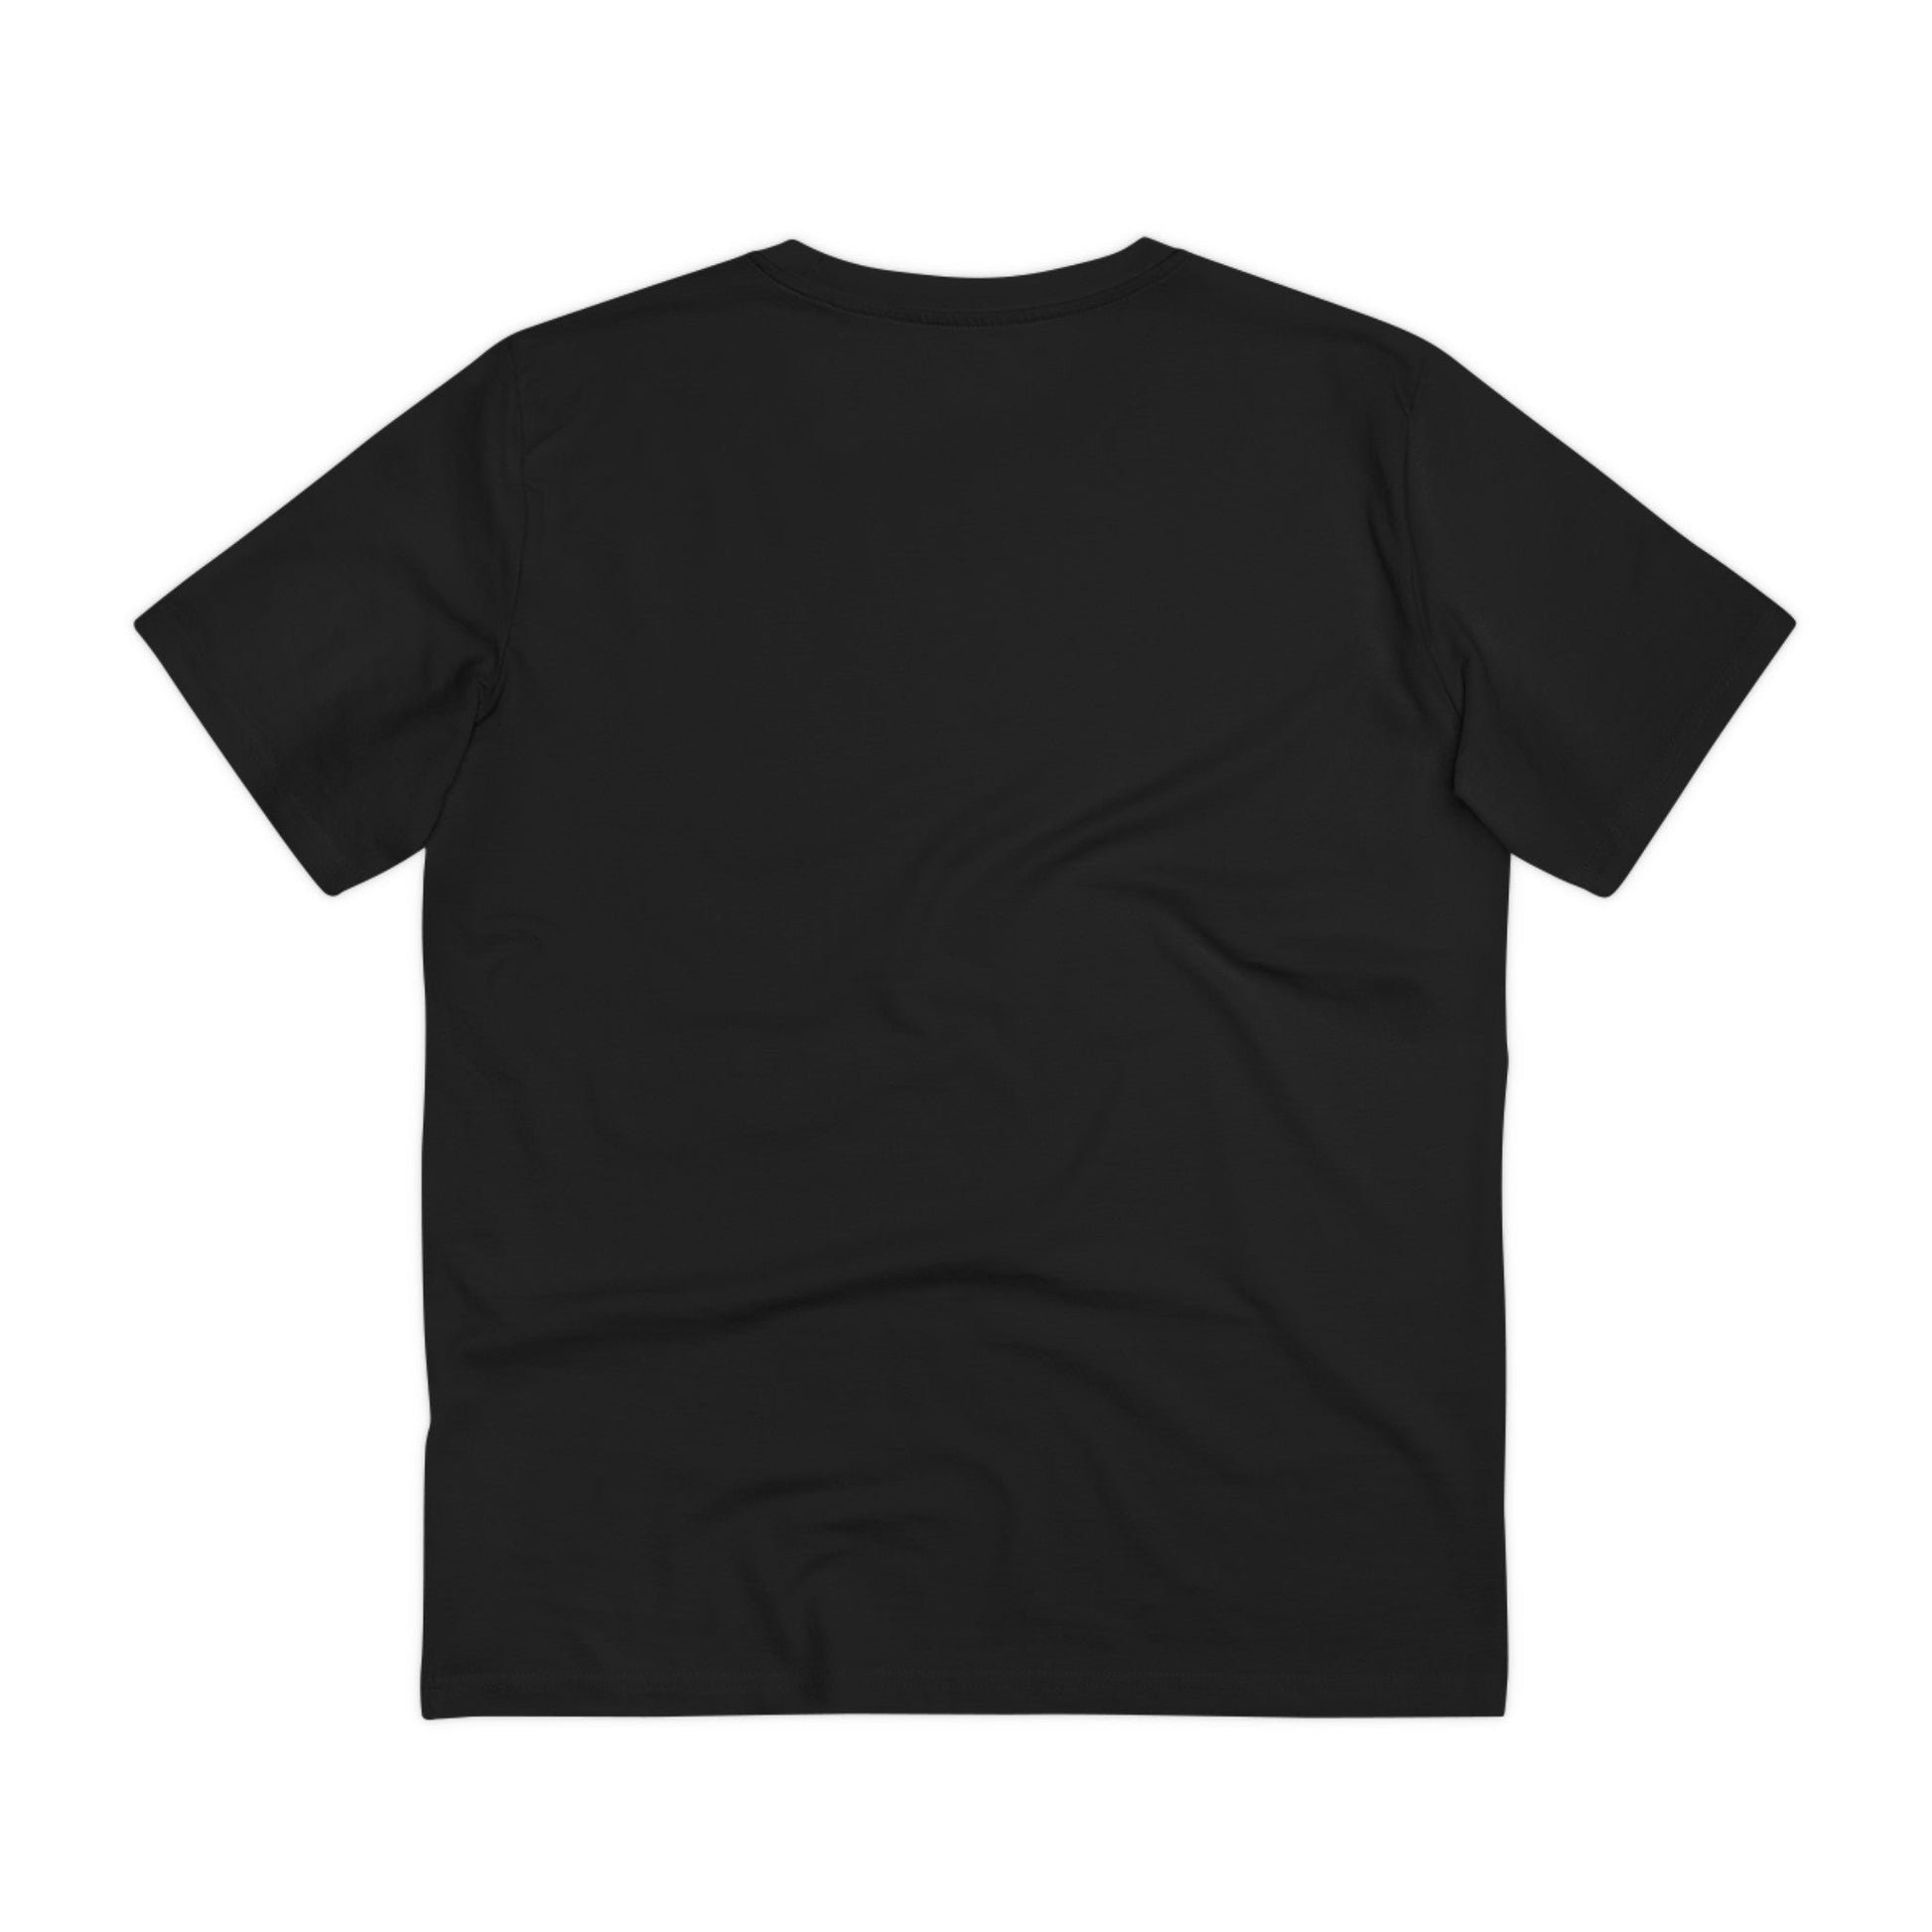 Printify T-Shirt Sandwich Einhorn - Unicorn World - Front Design